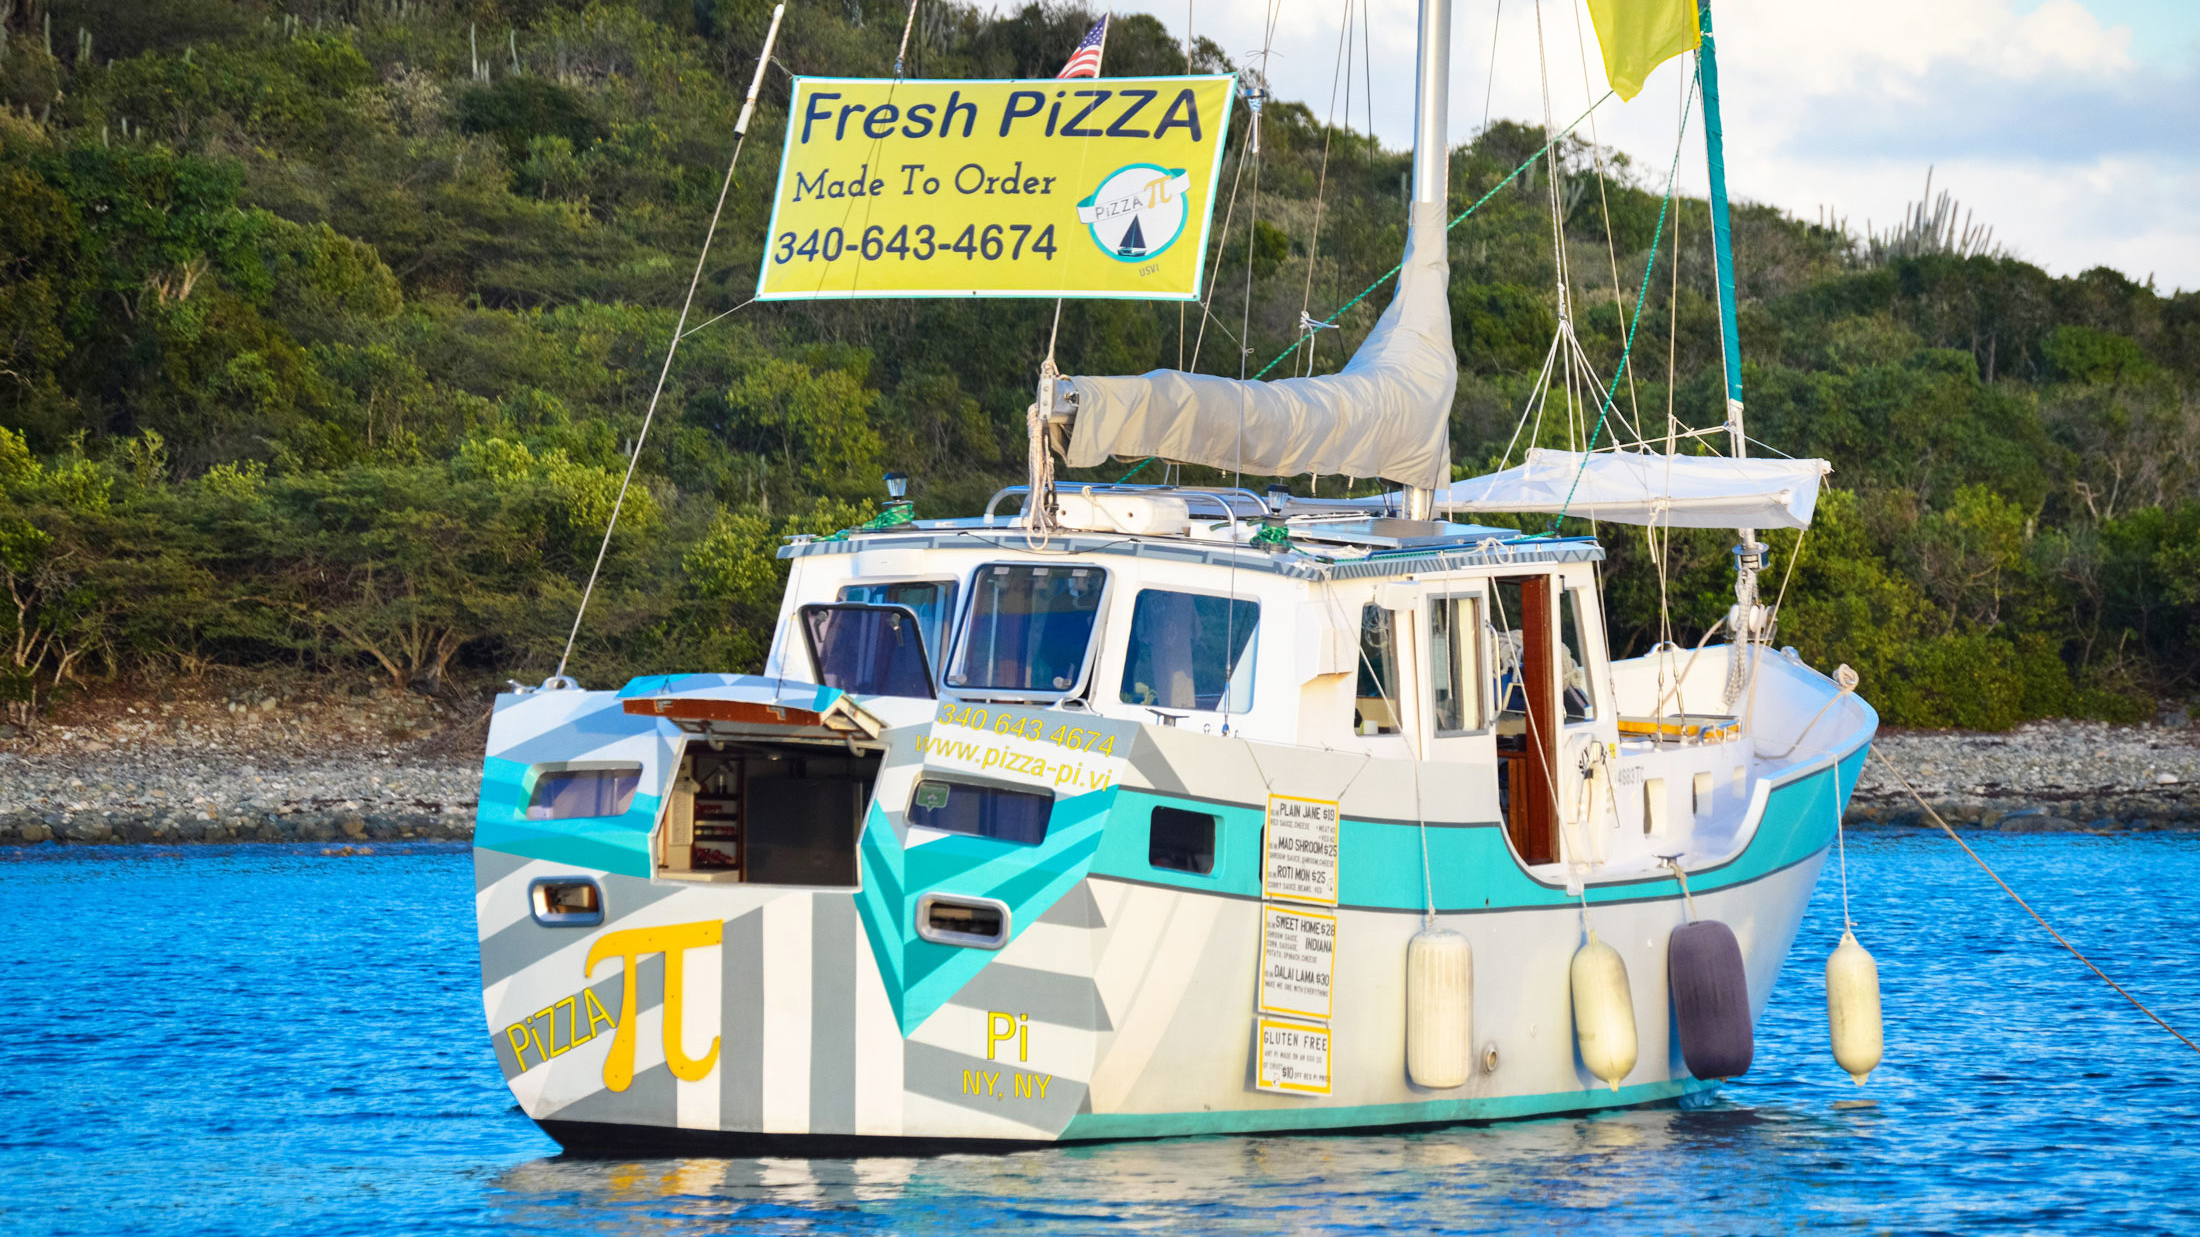 pizza-alommunka-vitorlas-hajo-karib-tenger-pizzafutar-etelrendeles-balaton-vitorlazas-hajozashu